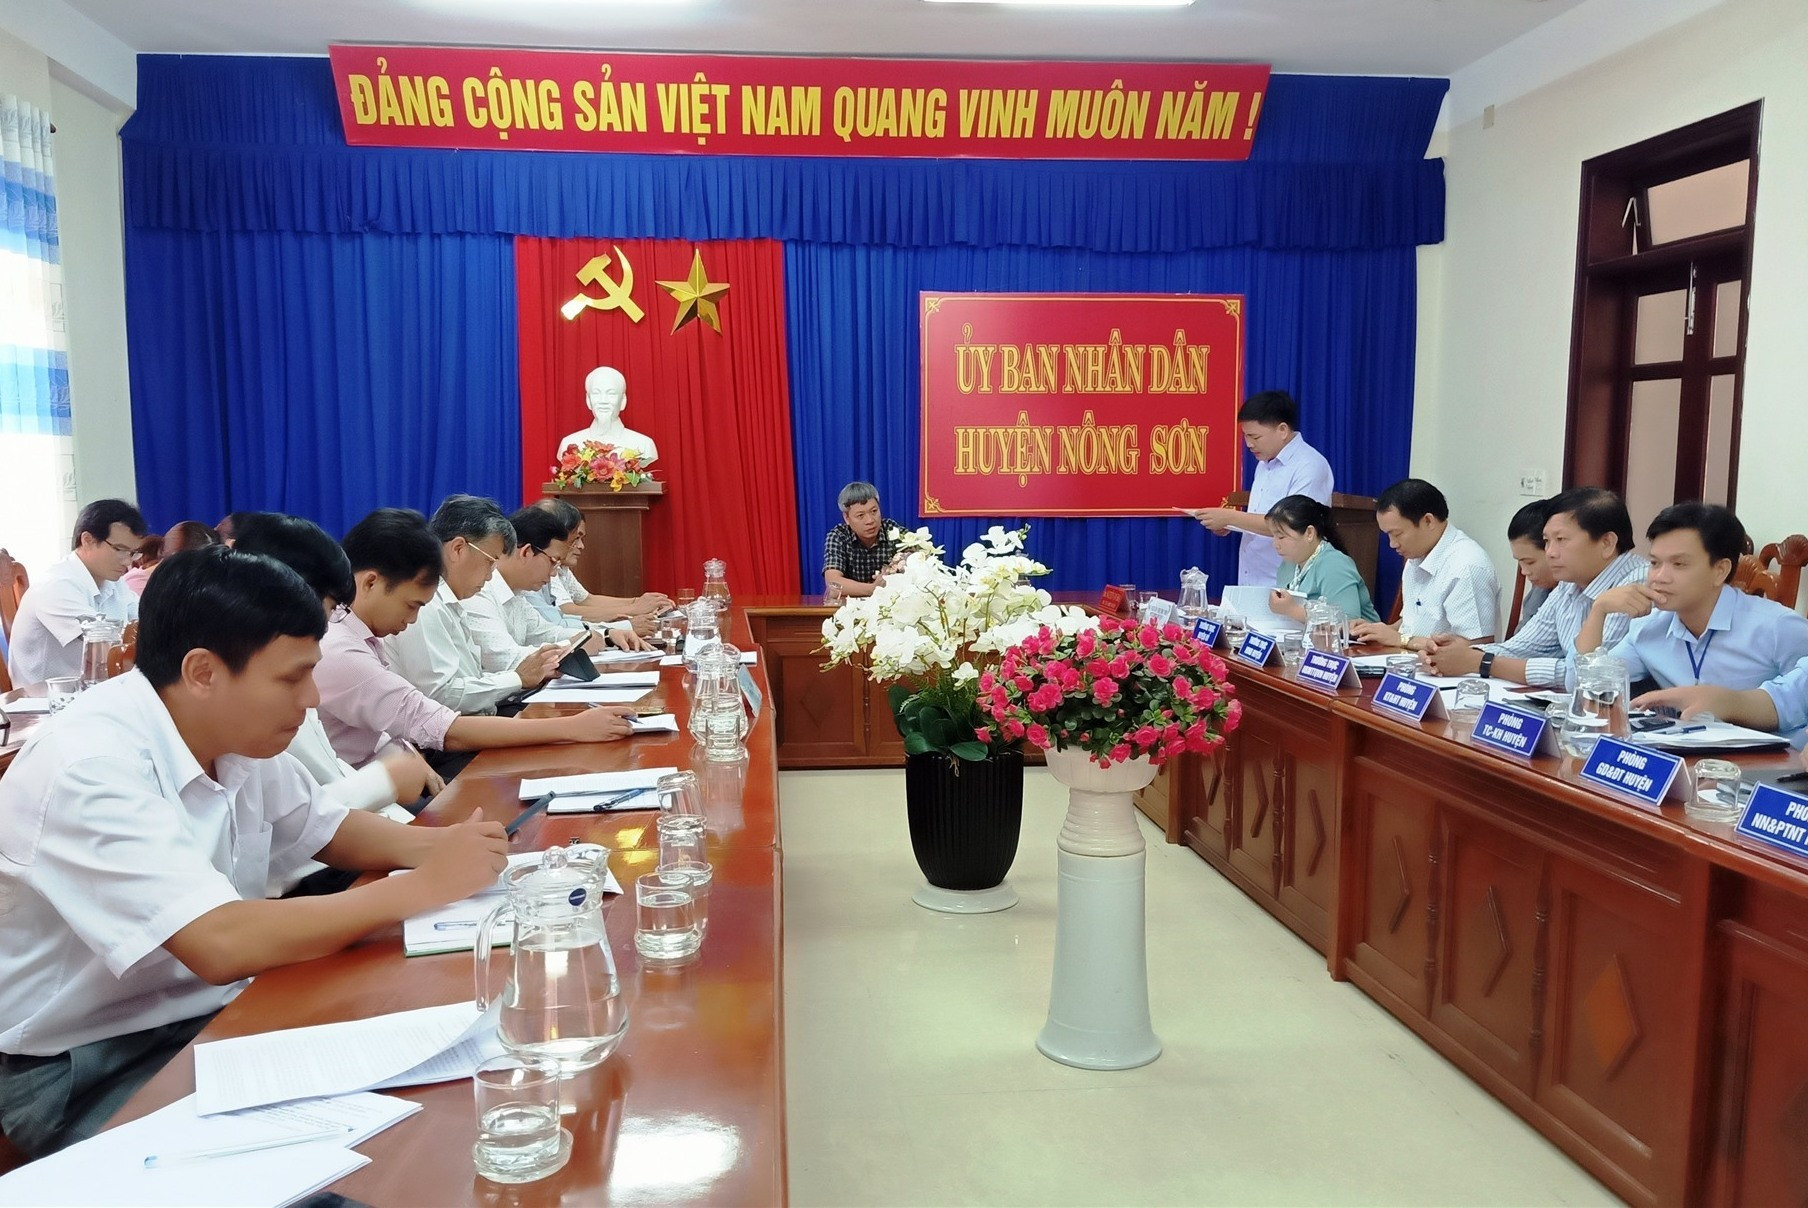 Phó Chủ tịch UBND tỉnh - Hồ Quang Bửu làm việc với UBND huyện Nông Sơn và các sở ngành. Ảnh: HOÀNG LIÊN